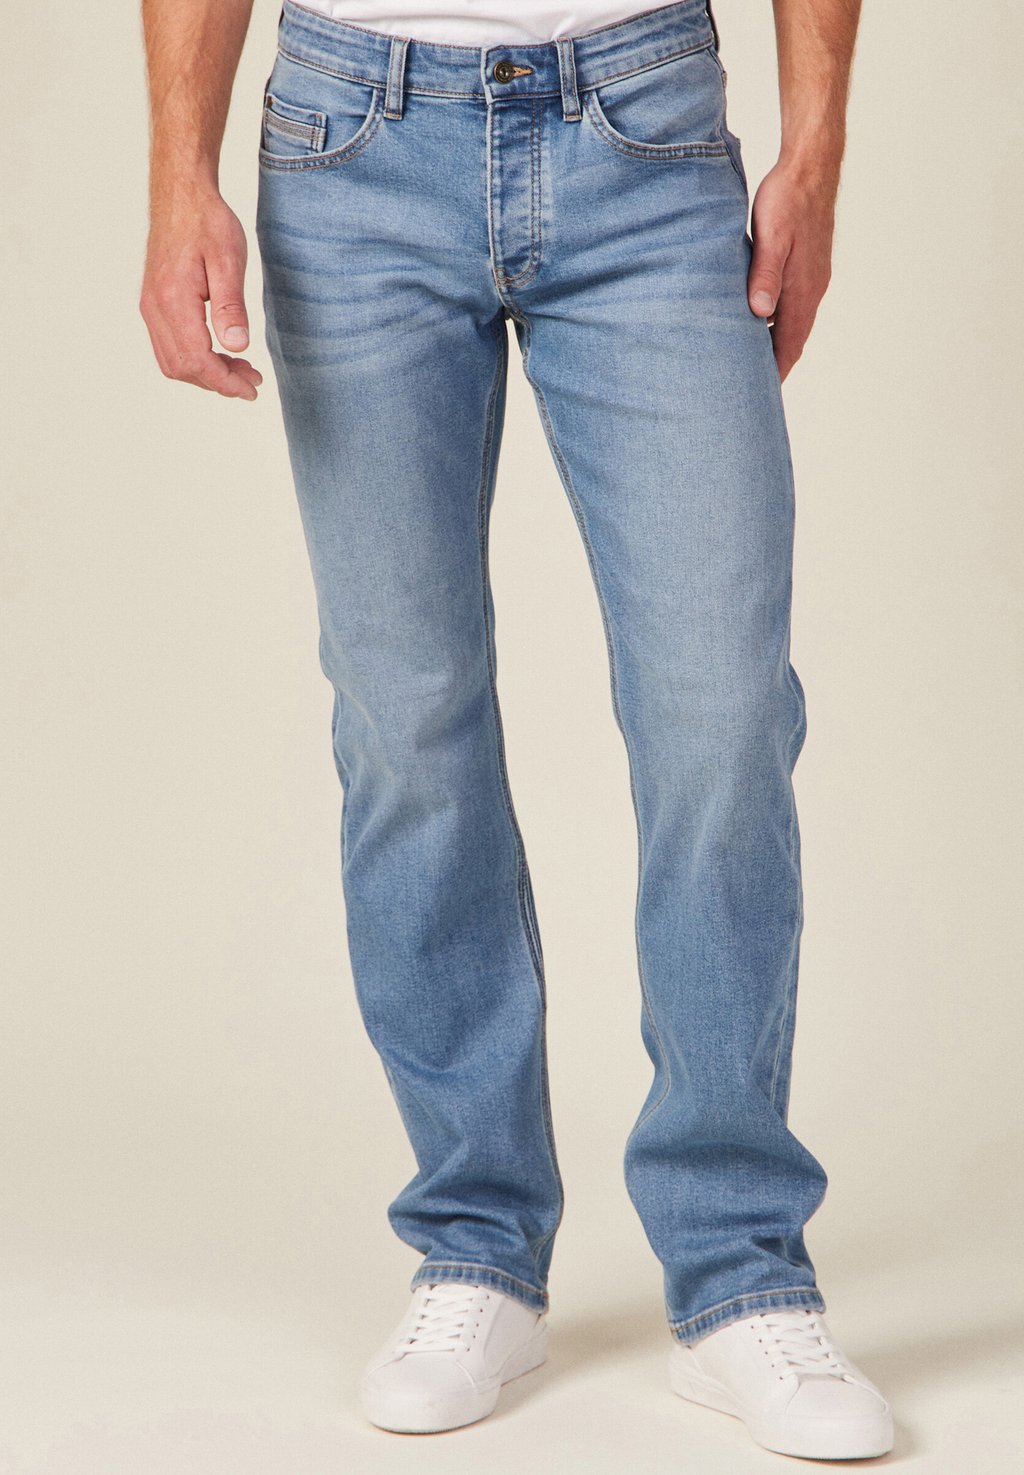 Джинсы Straight Leg BONOBO Jeans, цвет denim used